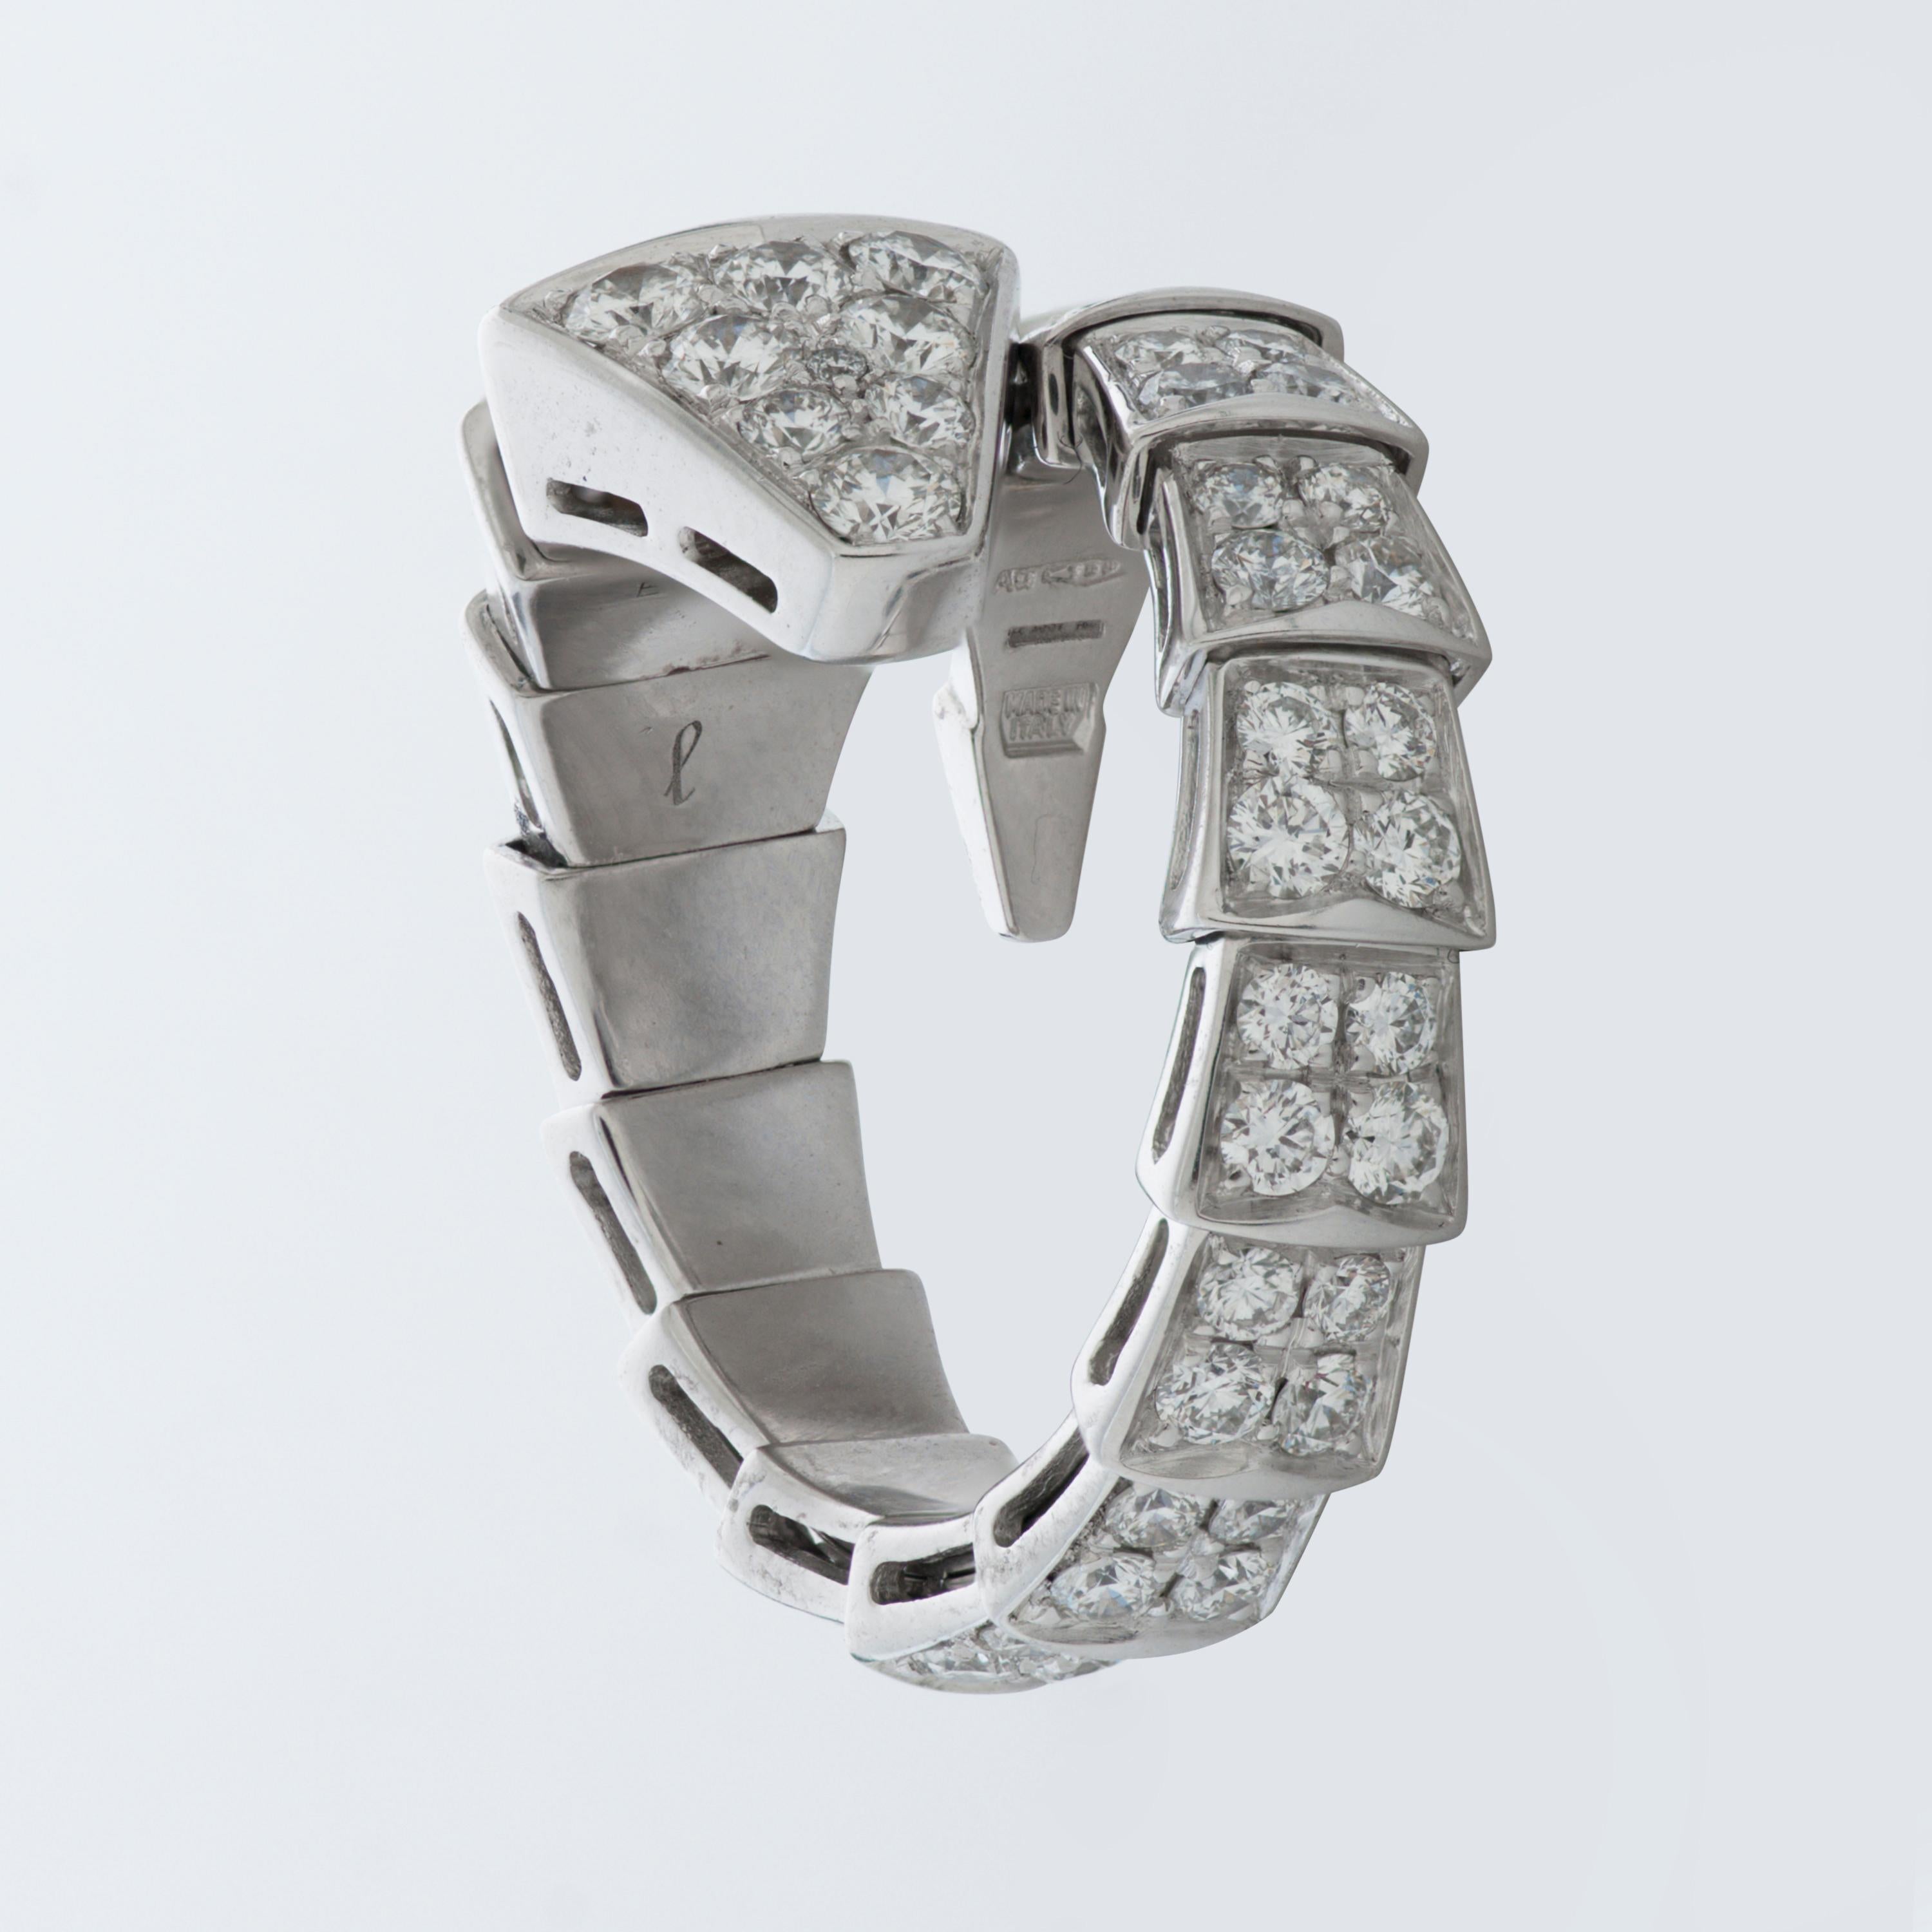 Dieser Bulgari-Ring aus der Collection'S Serpenti Viper besteht aus ca. 1,74 Karat runden Diamanten im Brillantschliff, die in 18 Karat Weißgold gefasst sind. 

Größe Large, flexibel.  Passend für die Größen 7-7.75 US (54-56 EU).
Nummeriert und